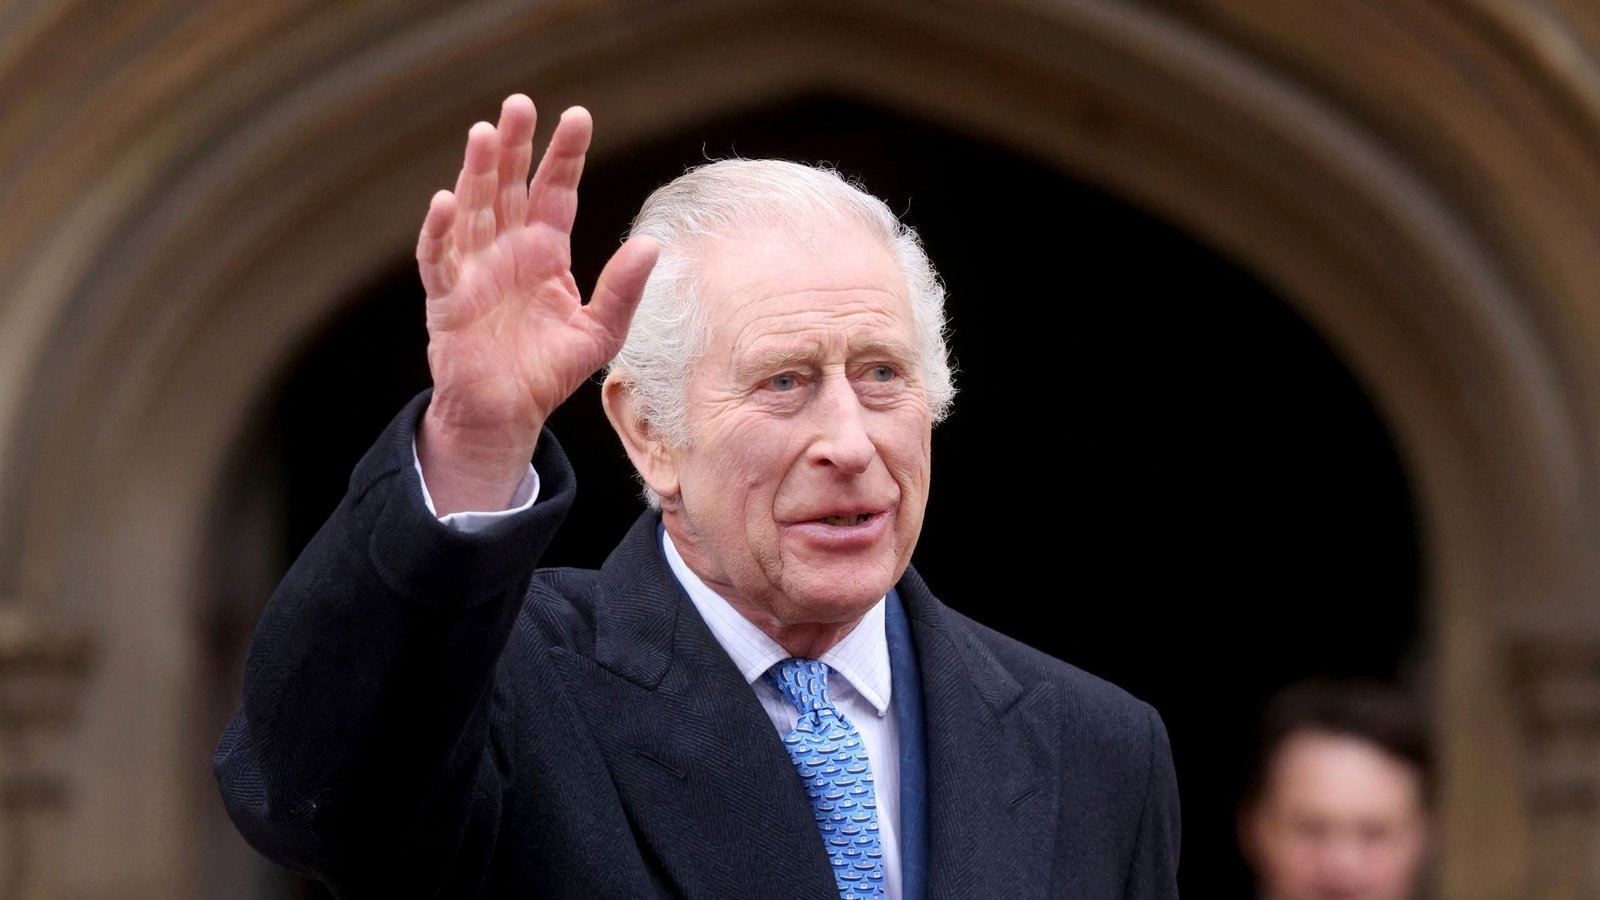 König Charles III. will wieder in die Öffentlichkeit zurückkehren.Foto: Hollie Adams/Reuters Pool/AP/dpa